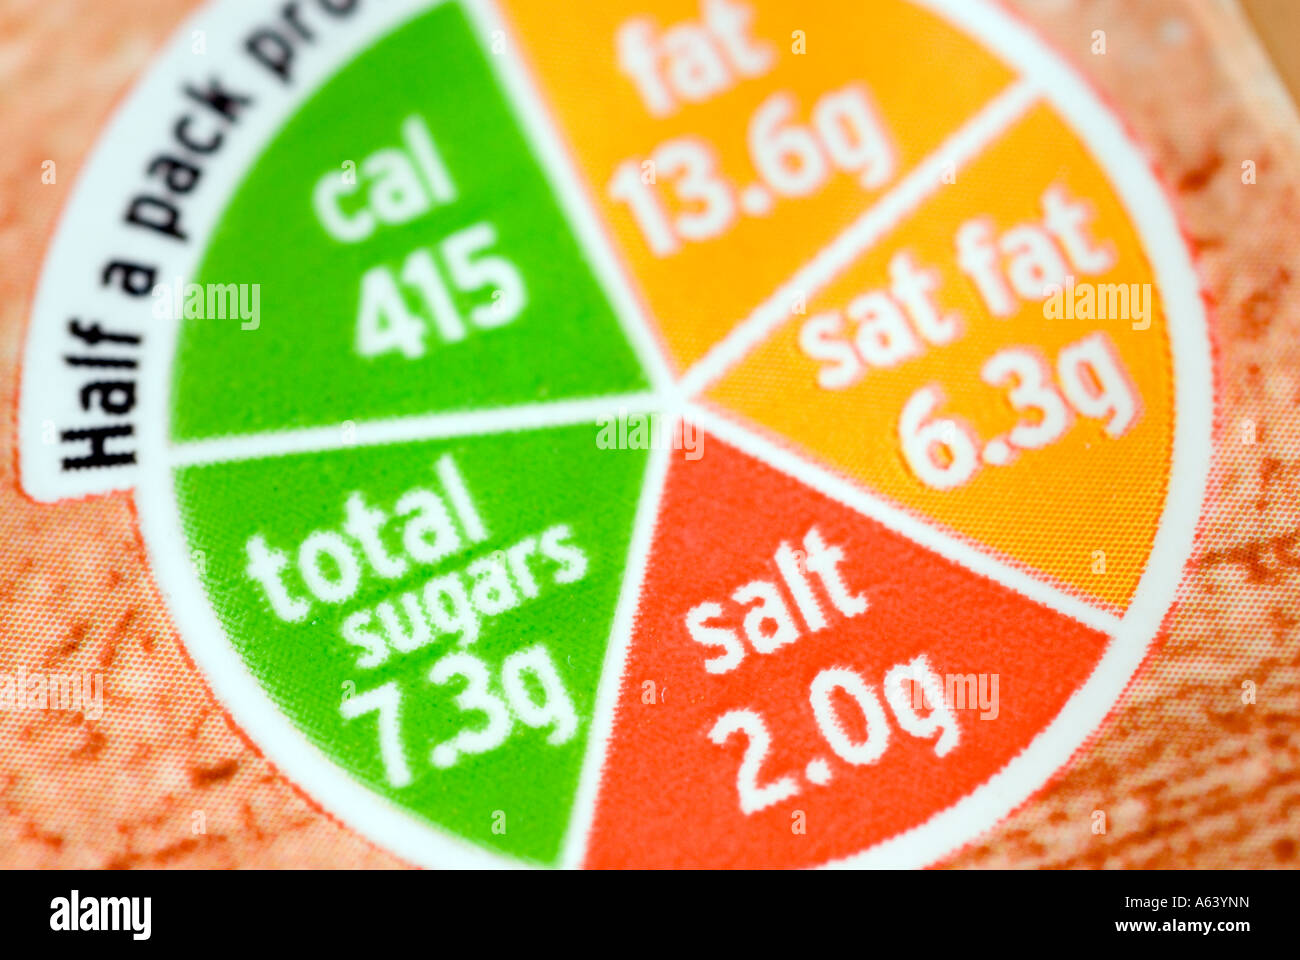 Supermarkt Lebensmittel Ernährung Etikette auf Karton von Sainsbury Eclairs, UK Stockfoto